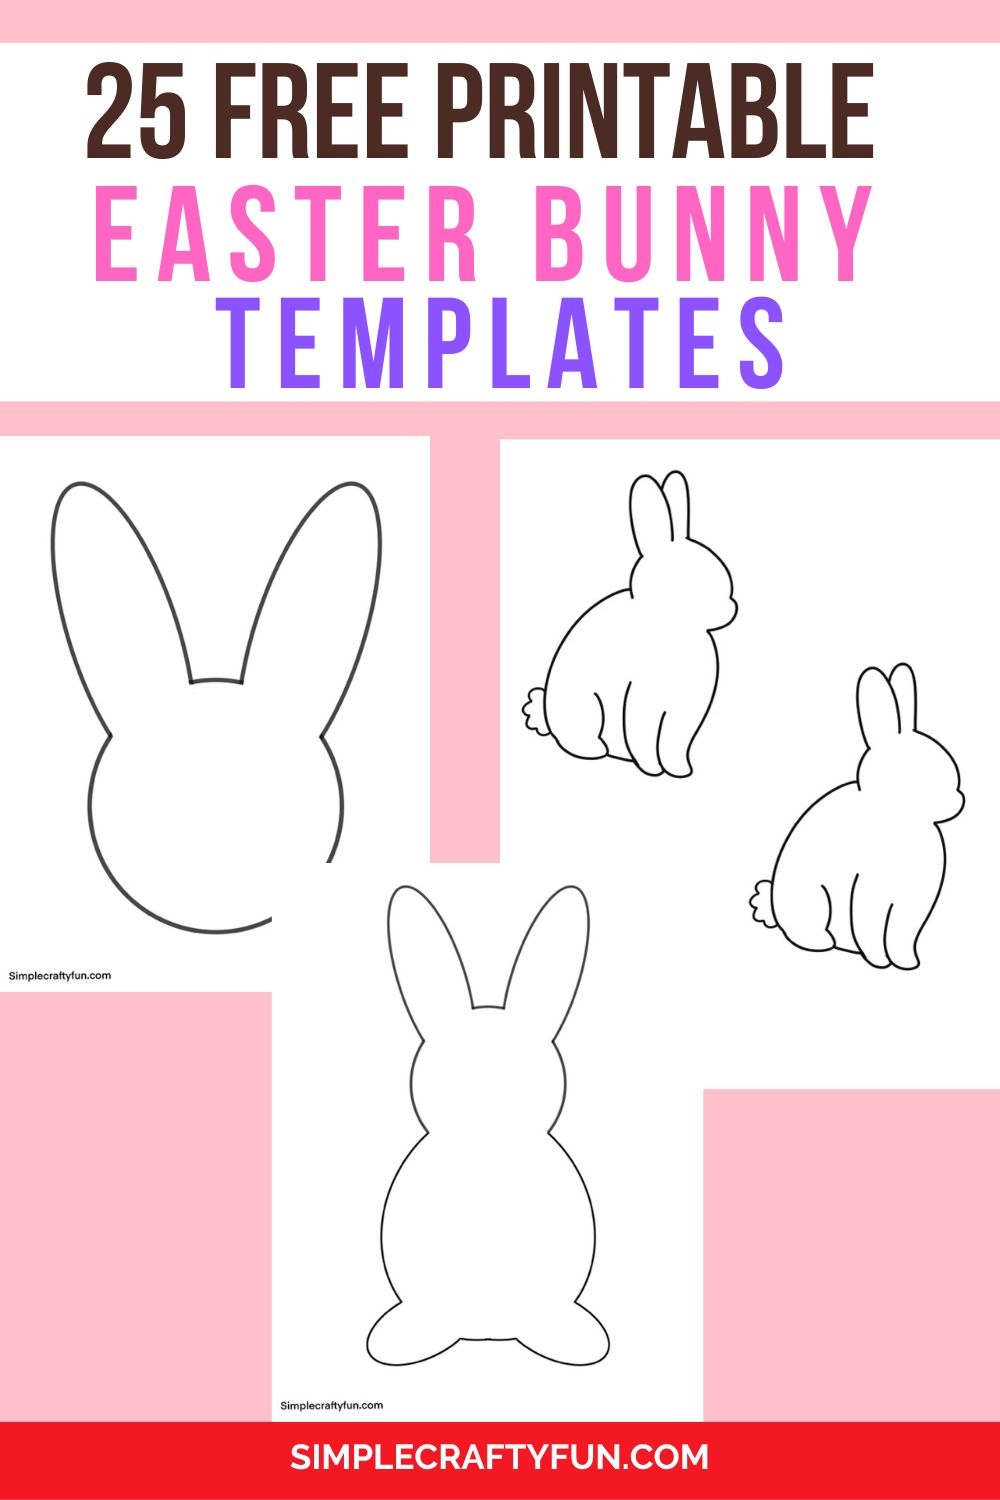 25 Free Printable Easter Bunny Template - Free Printable Bunny Templates